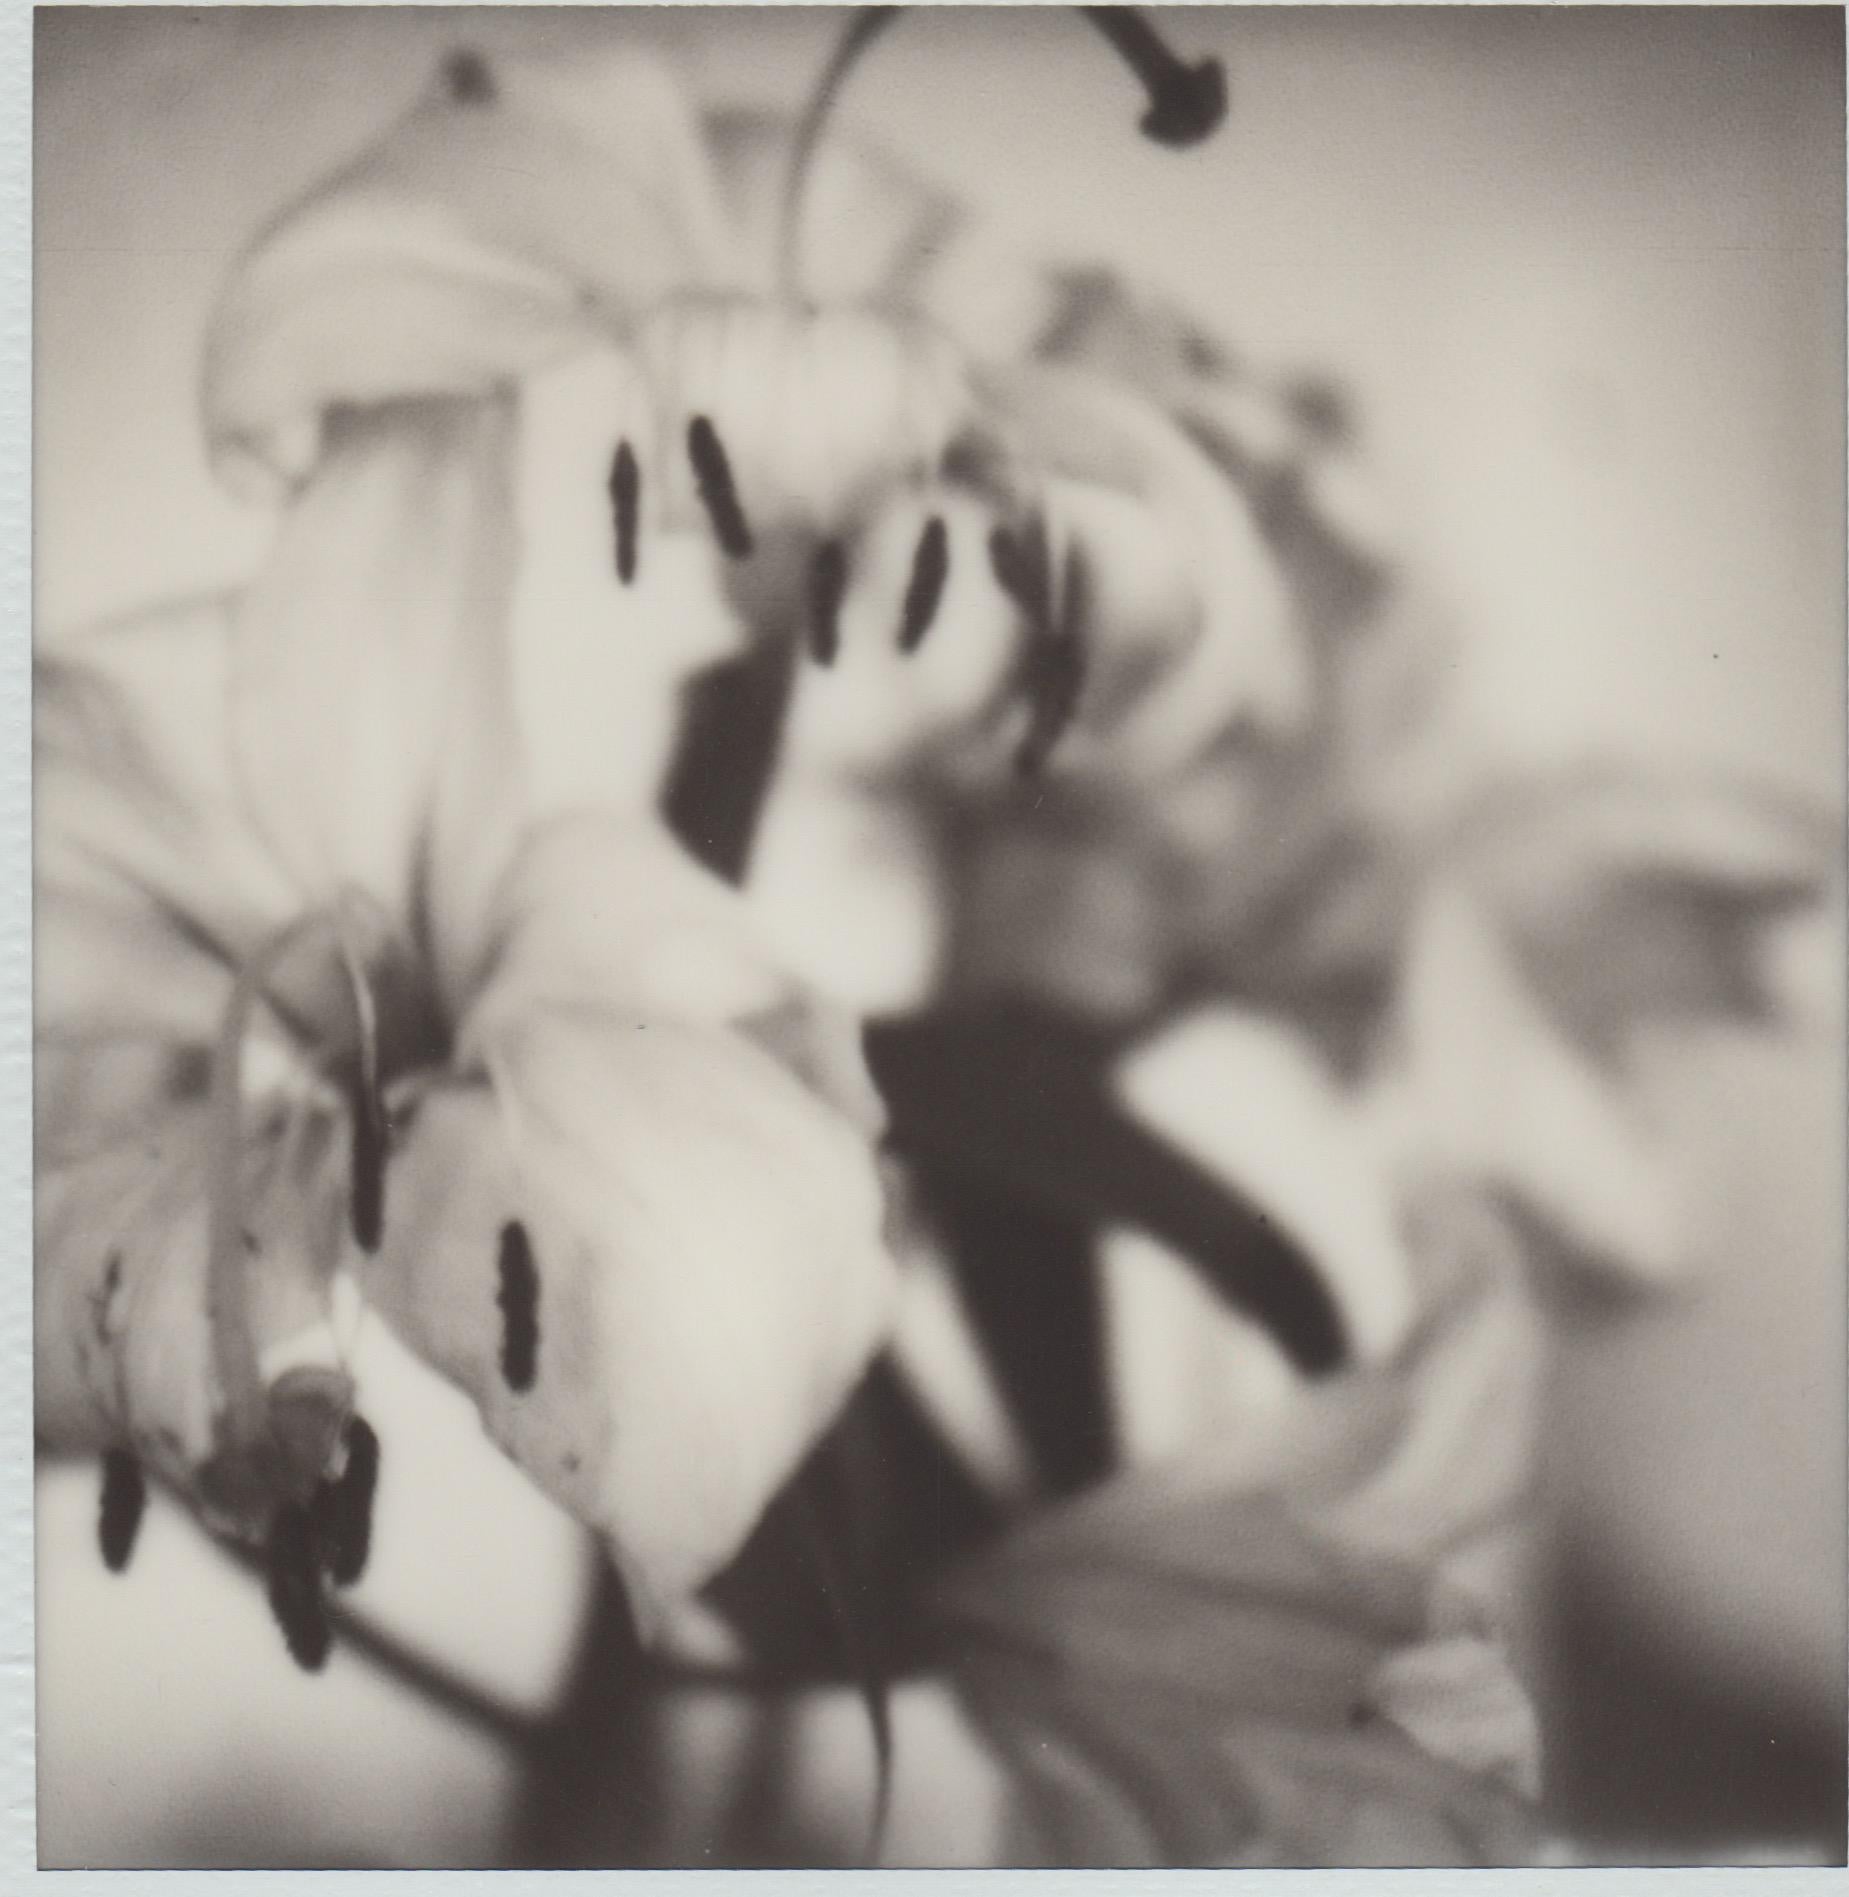 Past Bloom I - Photographie originale contemporaine en noir et blanc Polaroid.

Les œuvres de Pia Clodi englobent des moments et des expériences tirés de ses voyages, tout au long de sa carrière de photographe. Ces occasions, entre ou pendant les